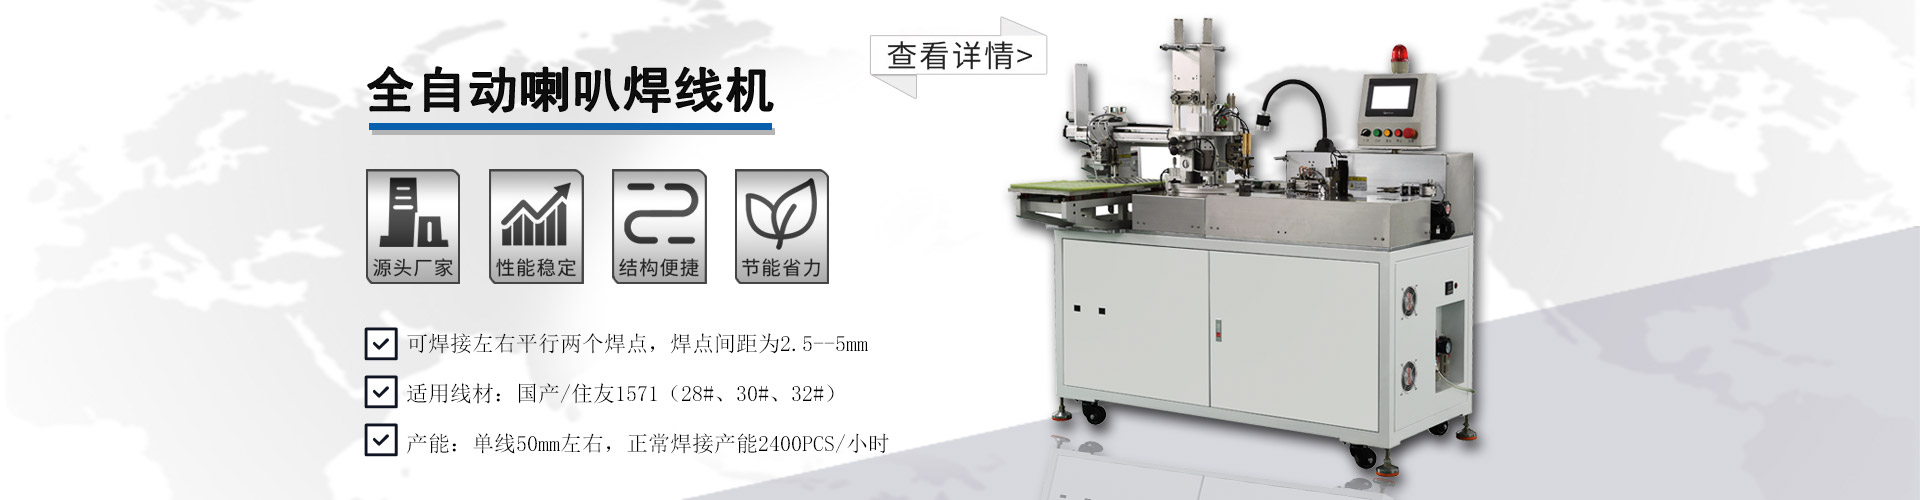 全自动喇叭焊線(xiàn)机(图1)